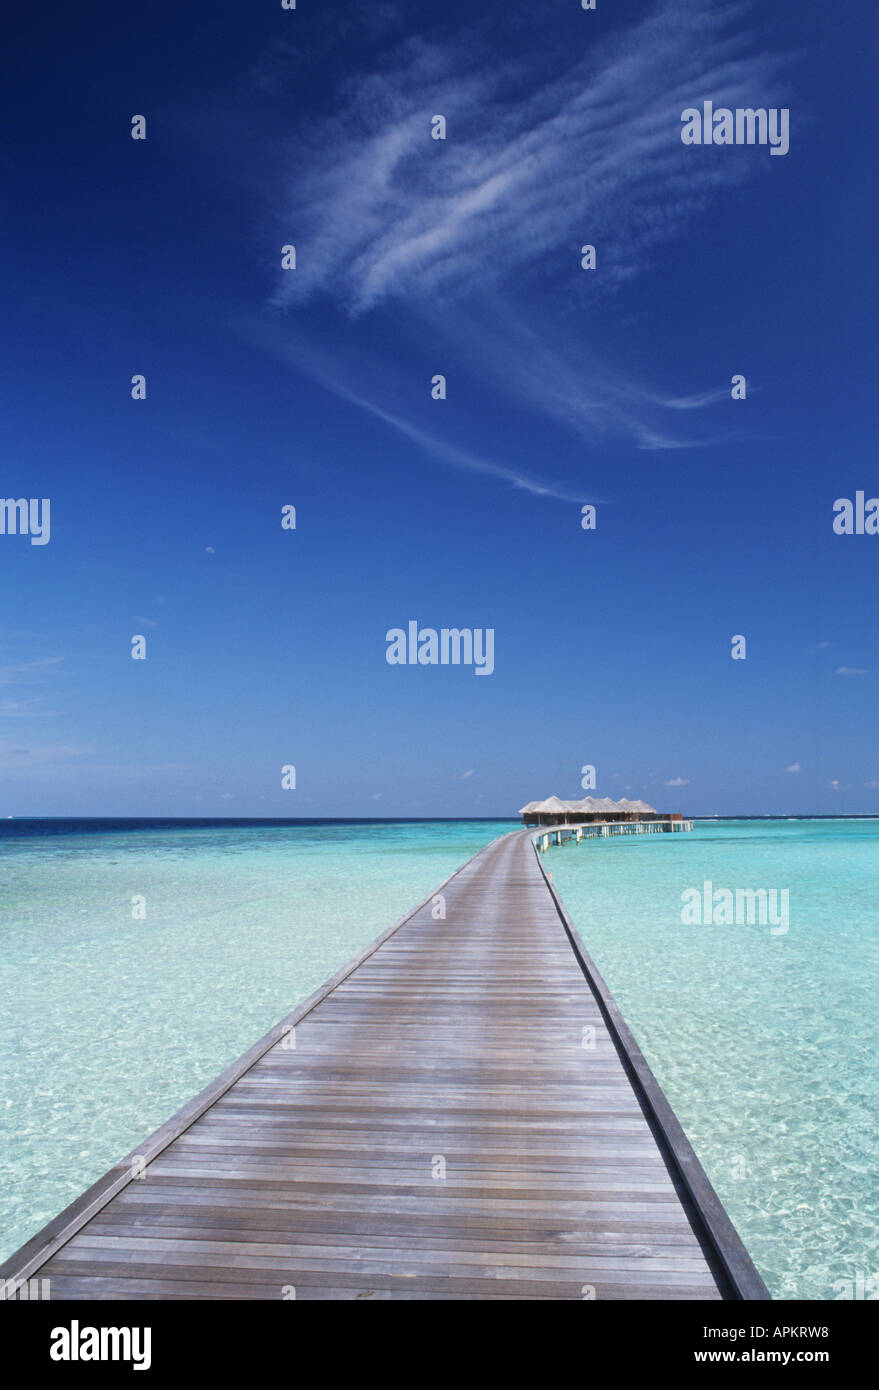 huvafenfushi maldives Stock Photo